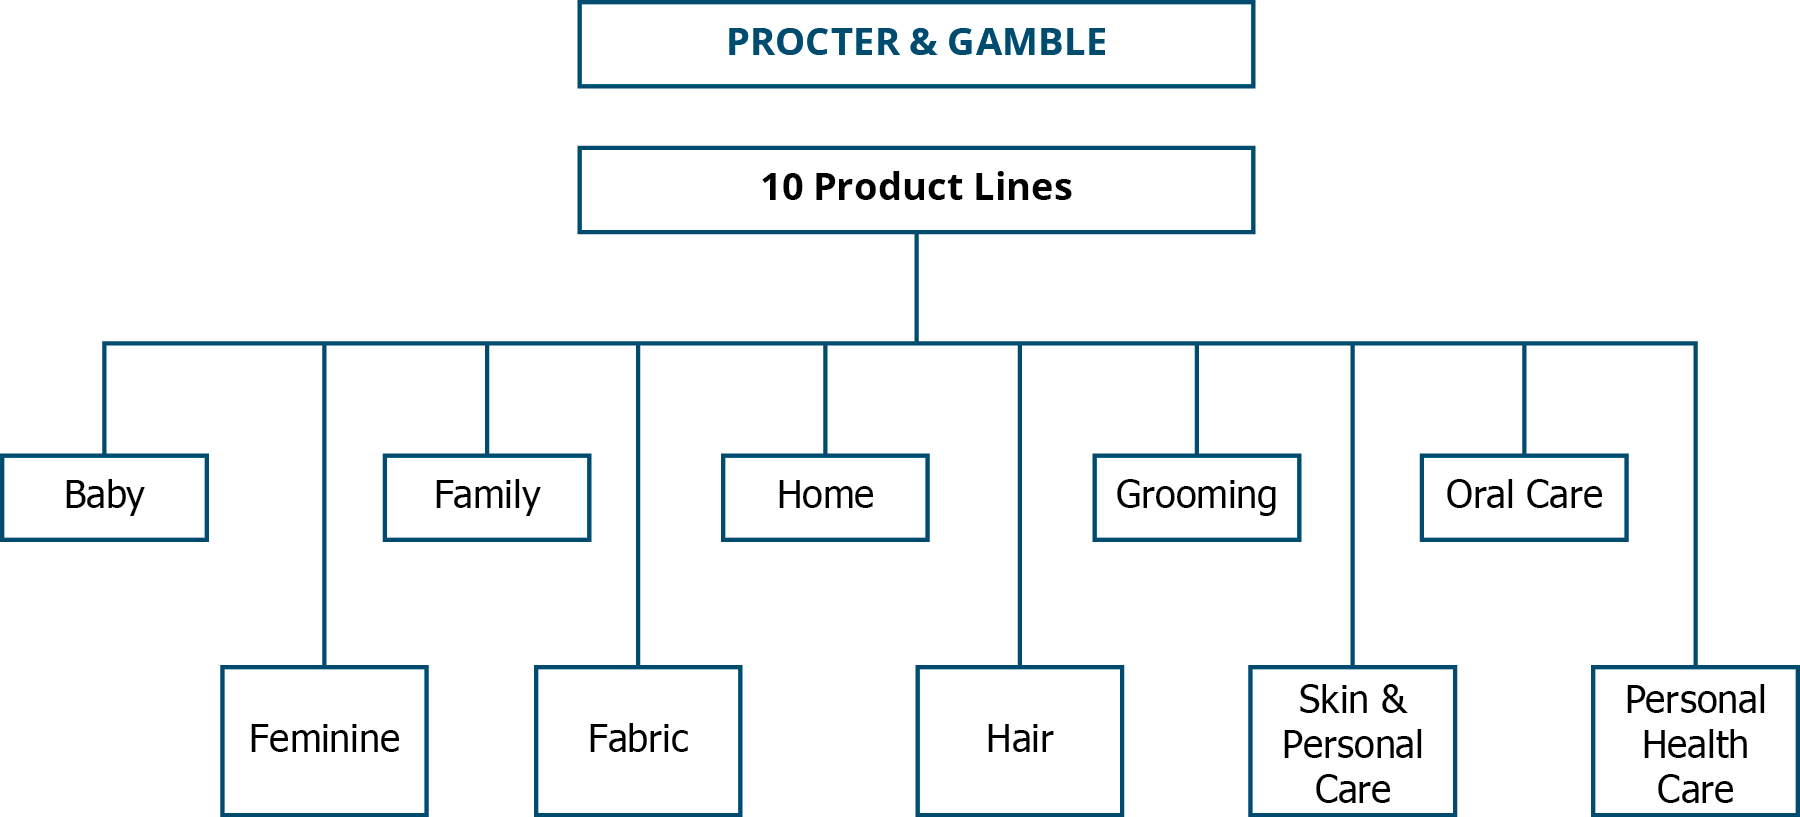 مخطط تنظيمي لشركة Procter & Gamble يوضح خطوط الإنتاج العشرة: الطفل، والأنثى، والأسرة، والنسيج، والمنزل، والشعر، والعناية الشخصية، والبشرة والعناية الشخصية، والعناية بالفم، والرعاية الصحية الشخصية.